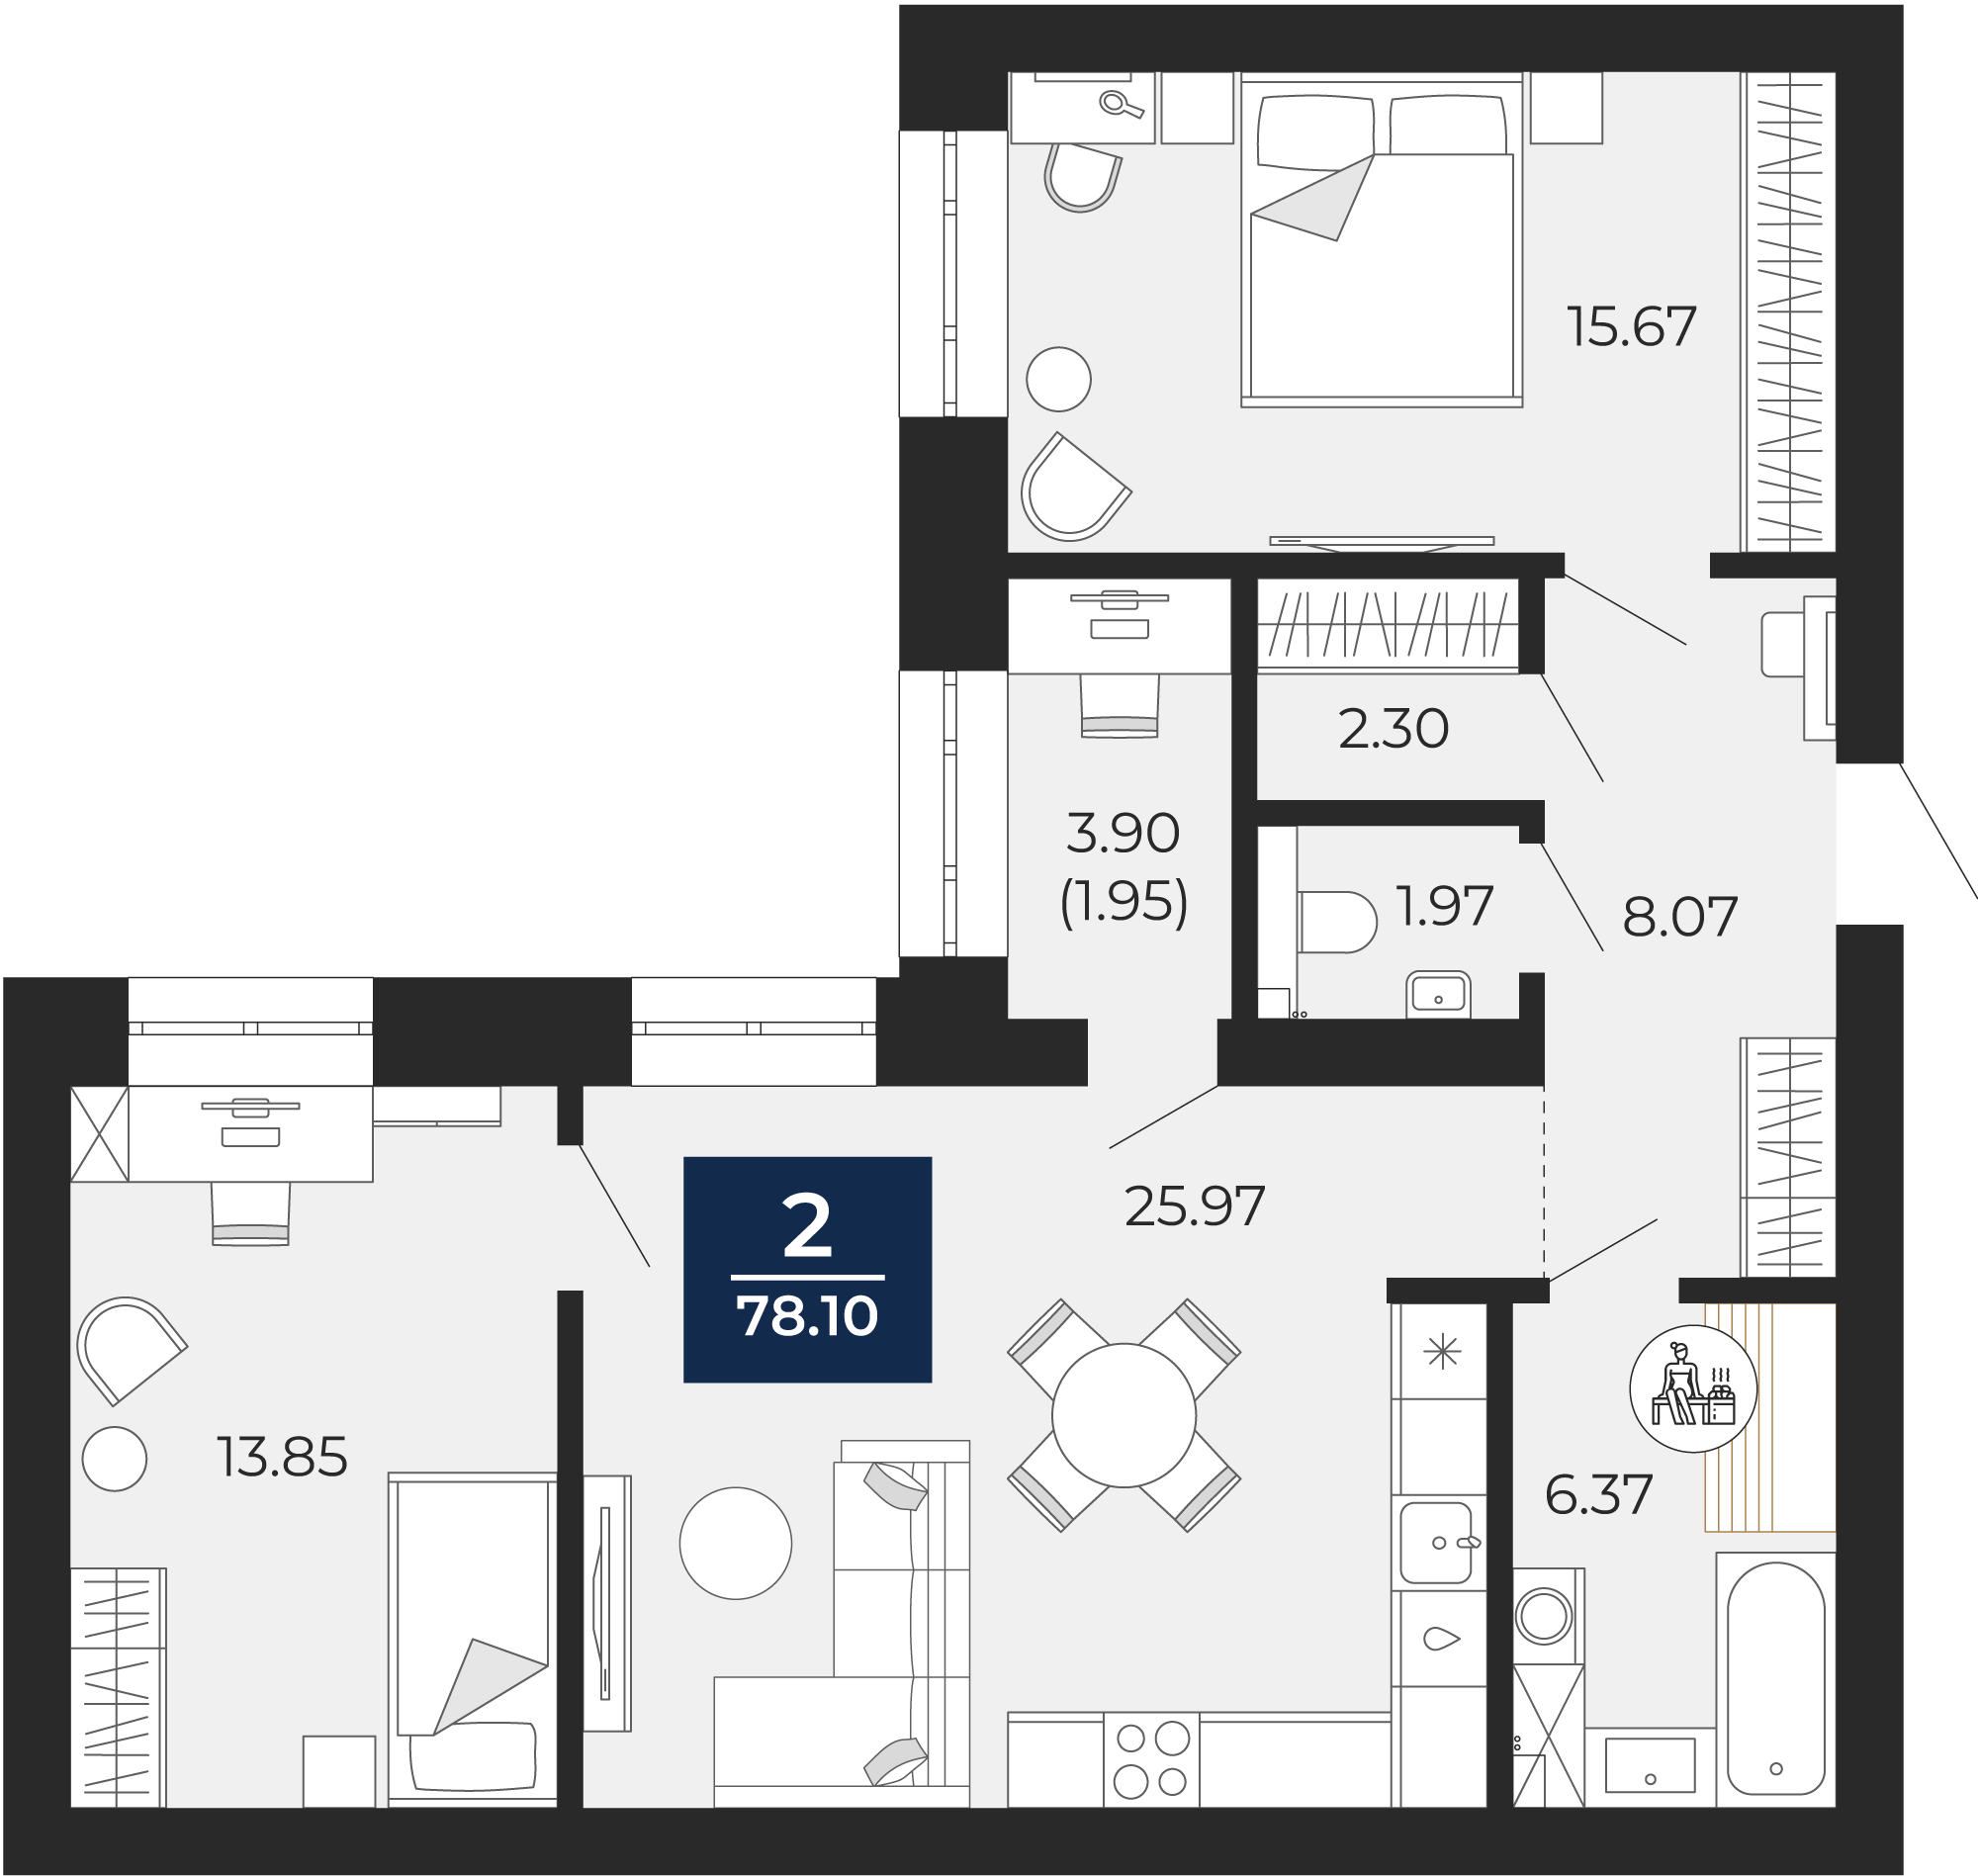 Квартира № 156, 2-комнатная, 78.1 кв. м, 6 этаж